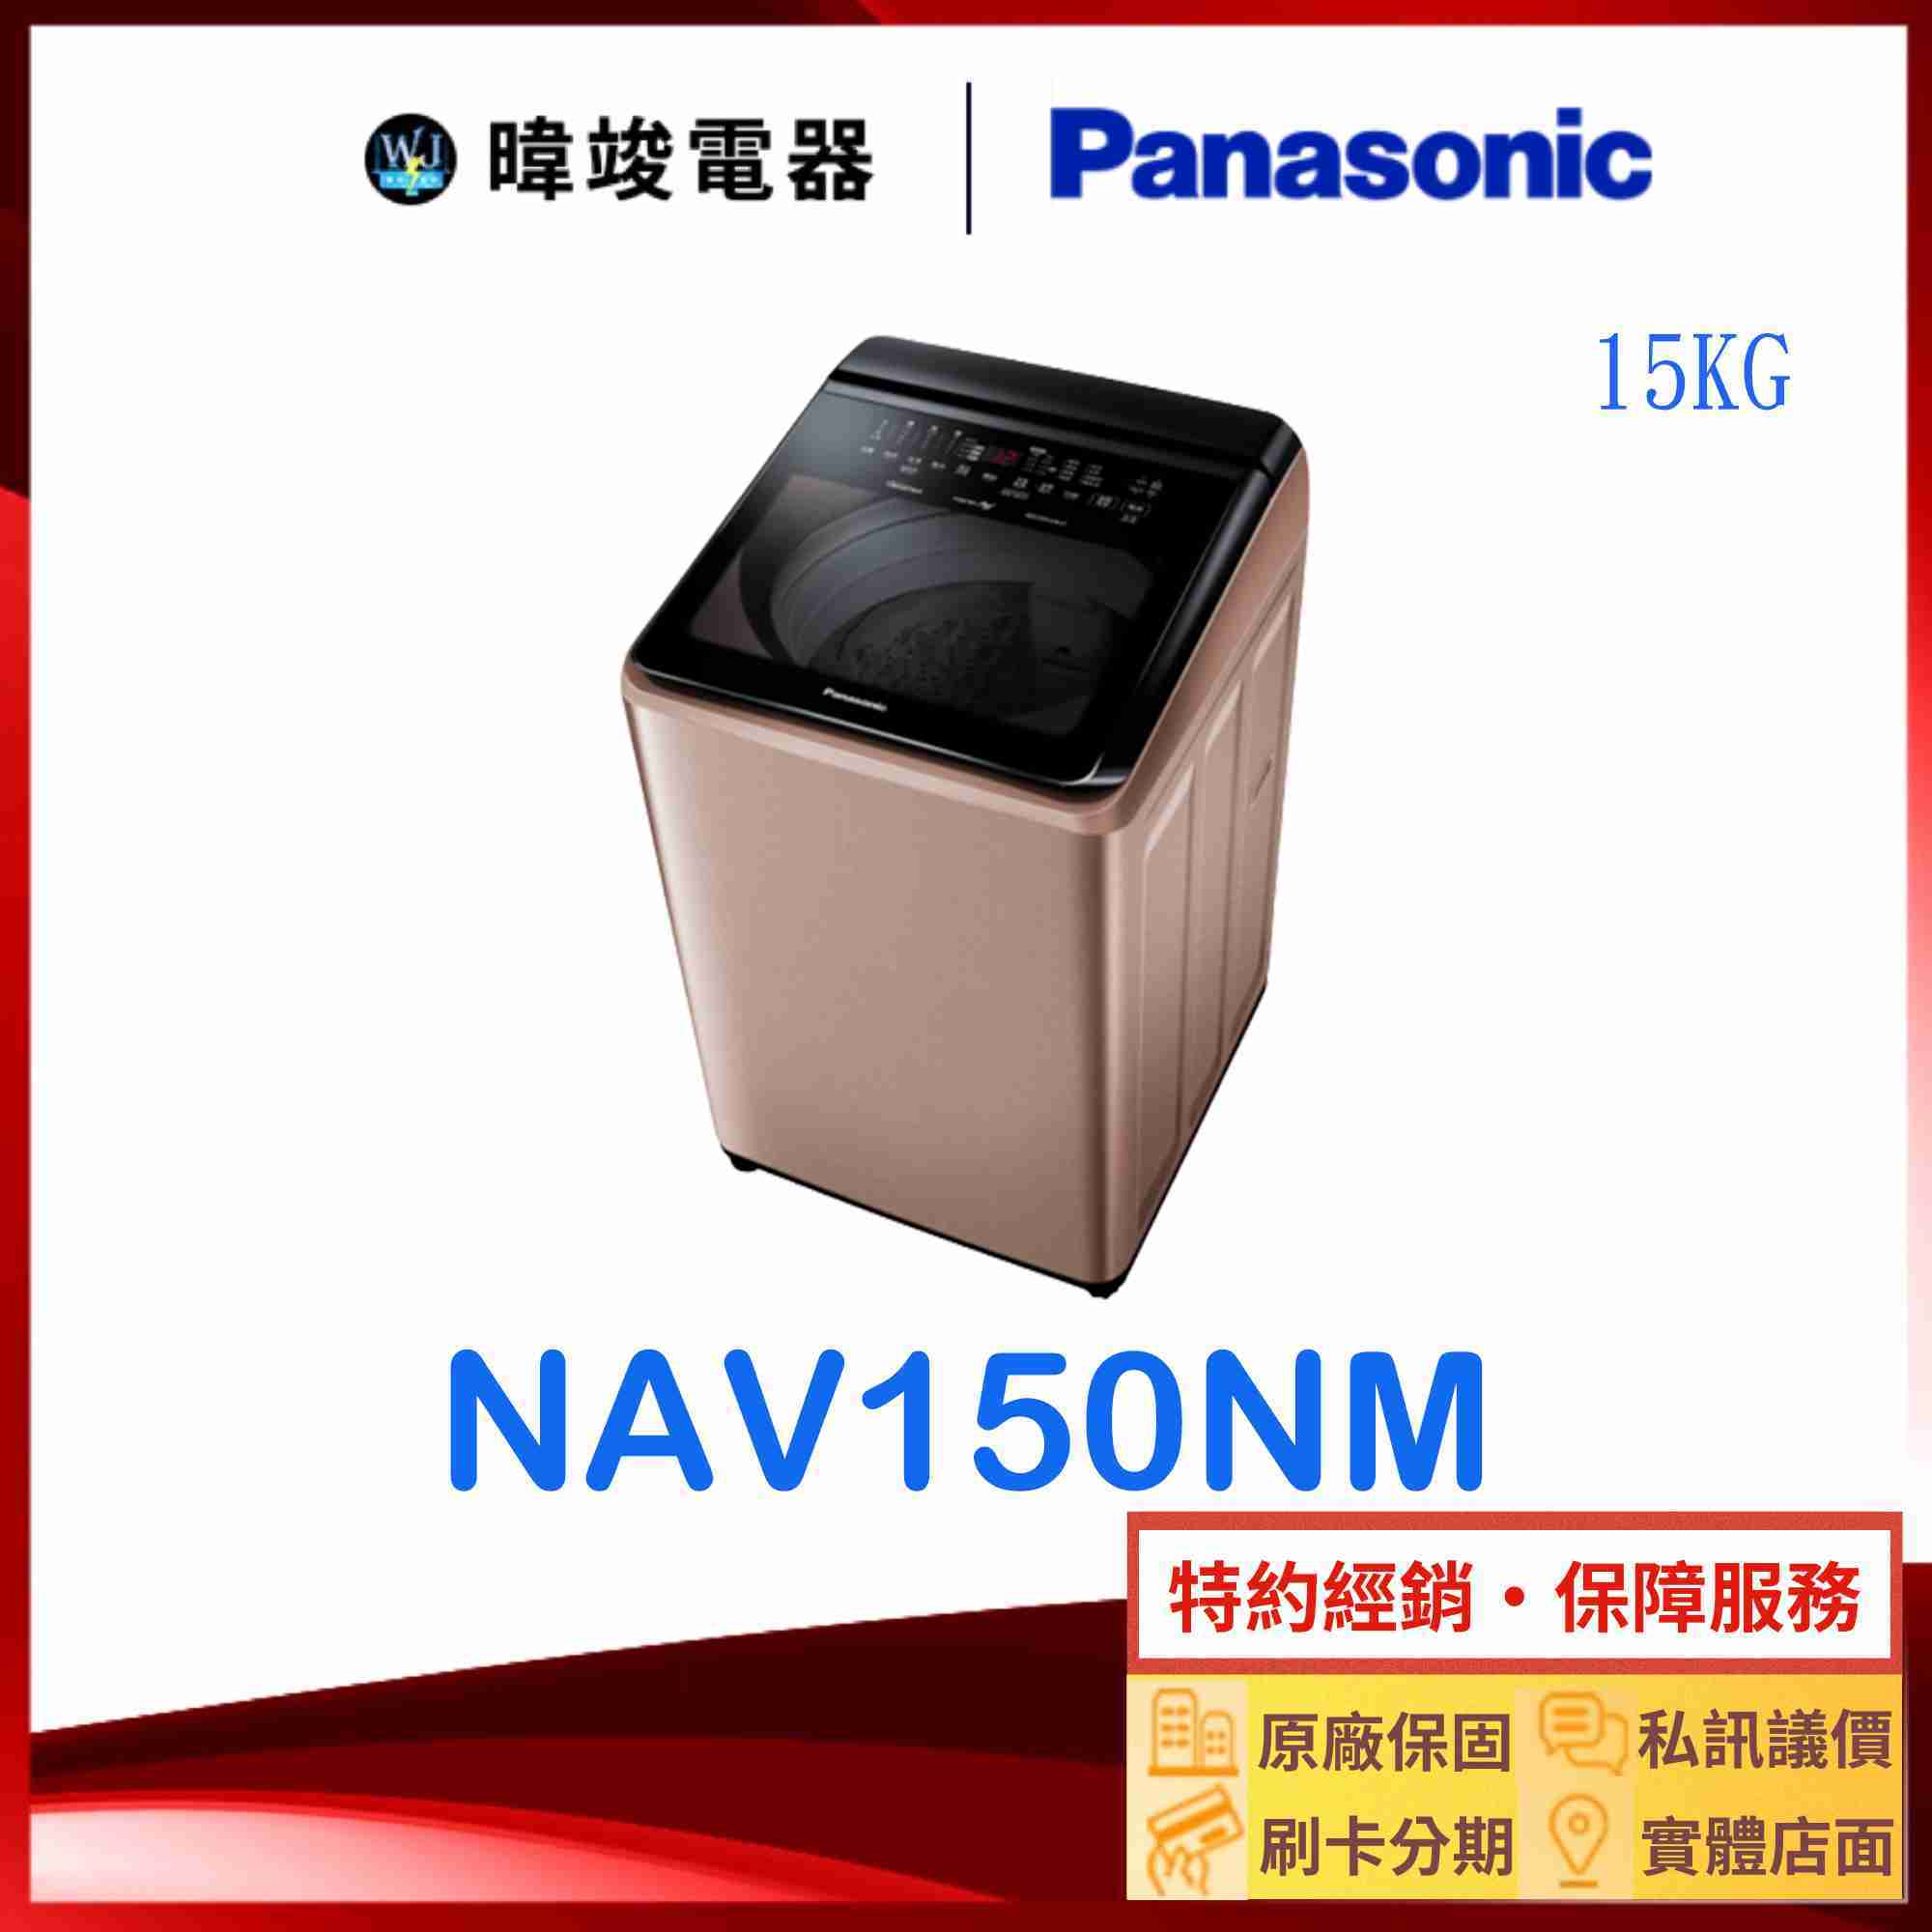 【暐竣電器】Panasonic 國際牌 NAV150NM 15公斤洗衣機 NA-V150NM 直立式變頻智能聯網洗衣機